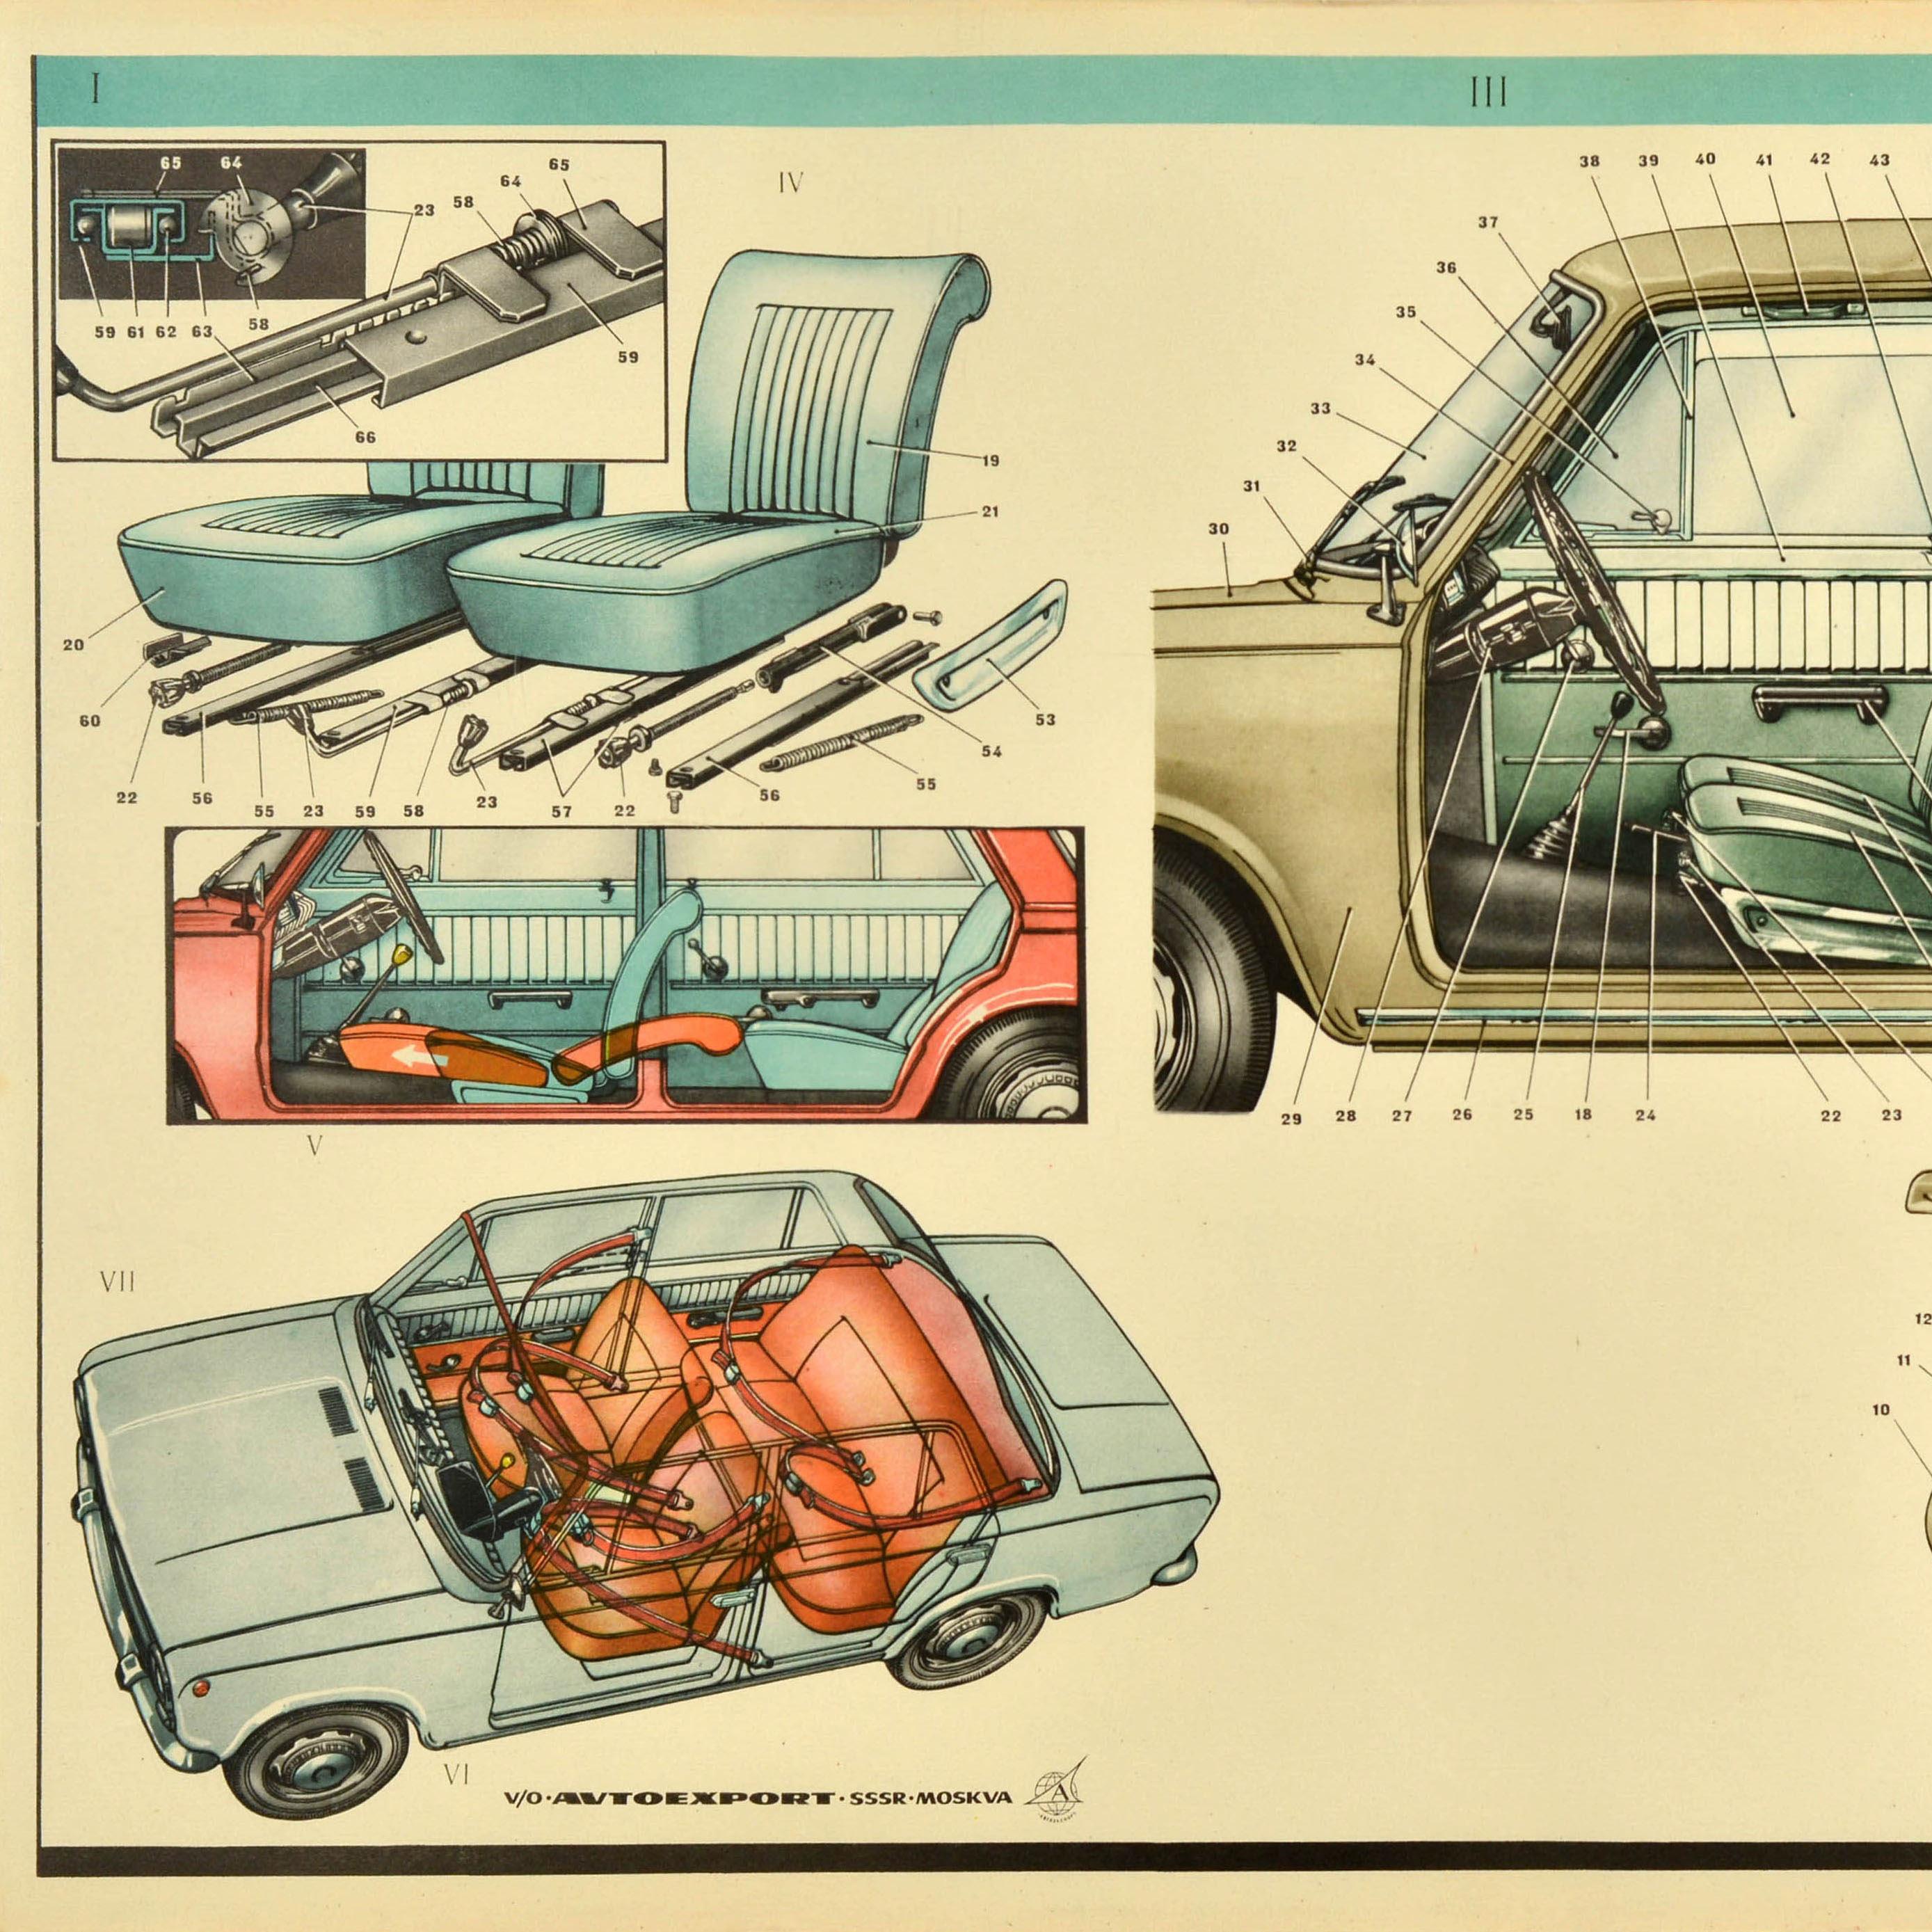 Original Oldtimer-Werbeplakat für Lada, das das Innere des Fahrzeugs zeigt, mit kleineren Abbildungen des Kofferraums und der Sitze, die die Mechanismen und Sicherheitsgurte detailliert darstellen, darunter der Text - v/o Avtoexport SSSR Moskva /